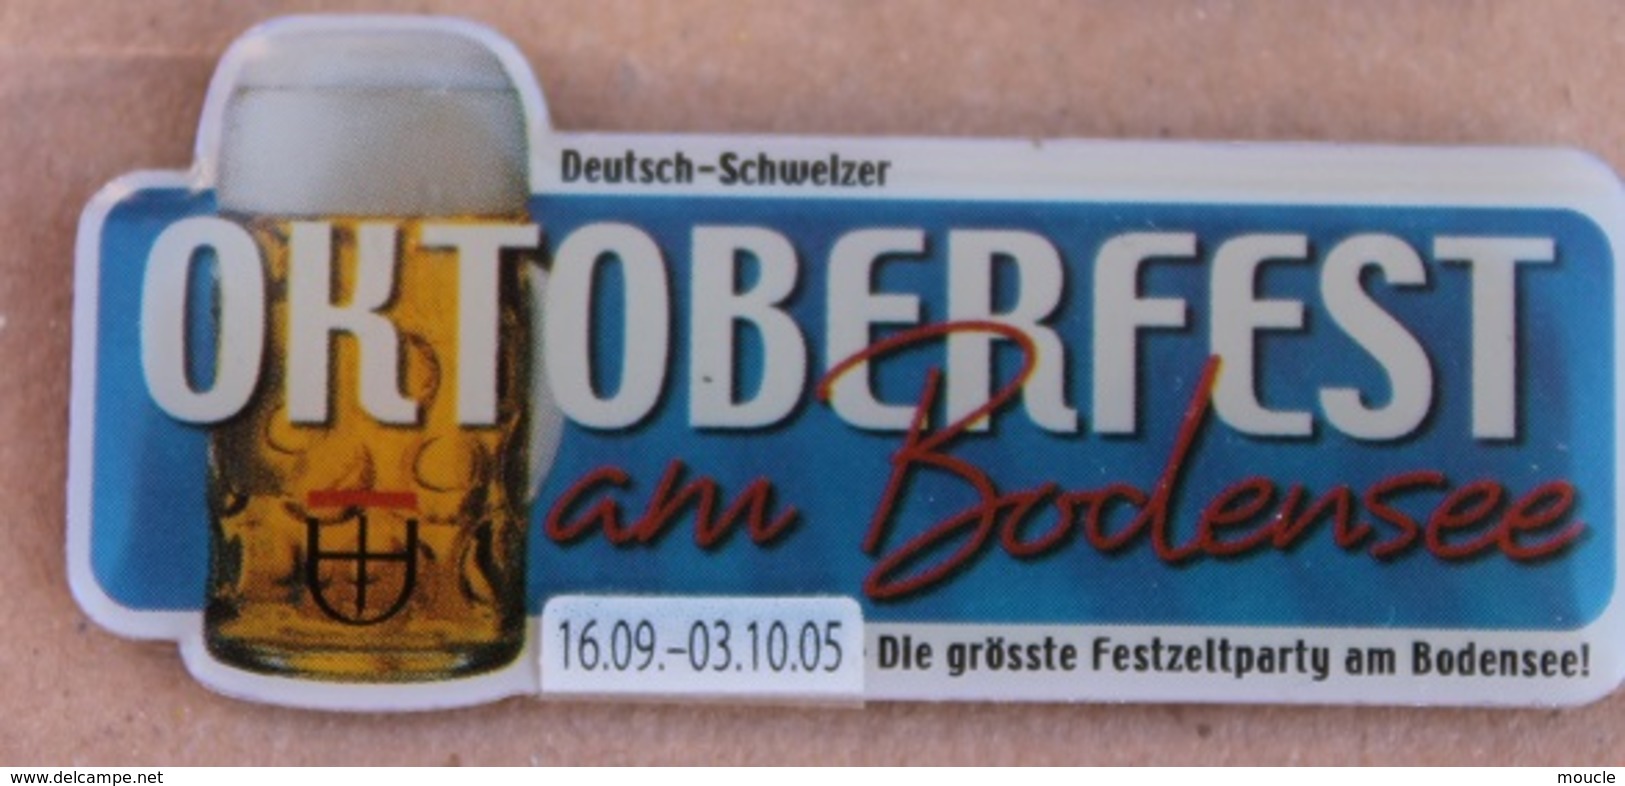 OKTOBERFEST AM BODENSEE - 19-09 / 03-10 05 - DIE GRÖSSE FESTZELTPARTY AM BODENSEE ! - BIERE - BEER - CHOPE      (16) - Bier